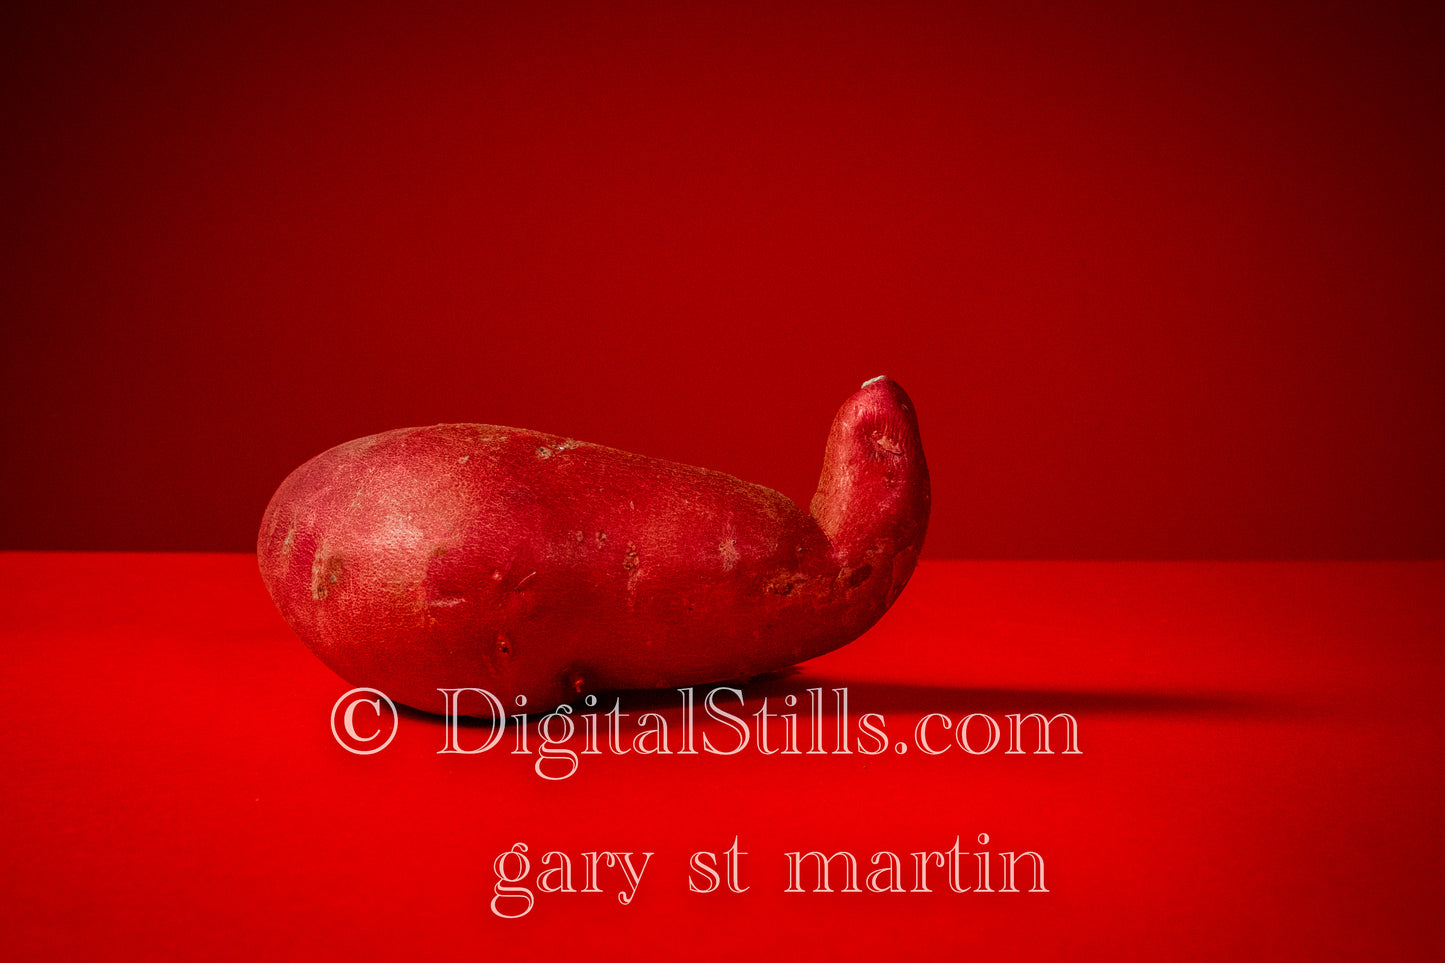 Potato Red